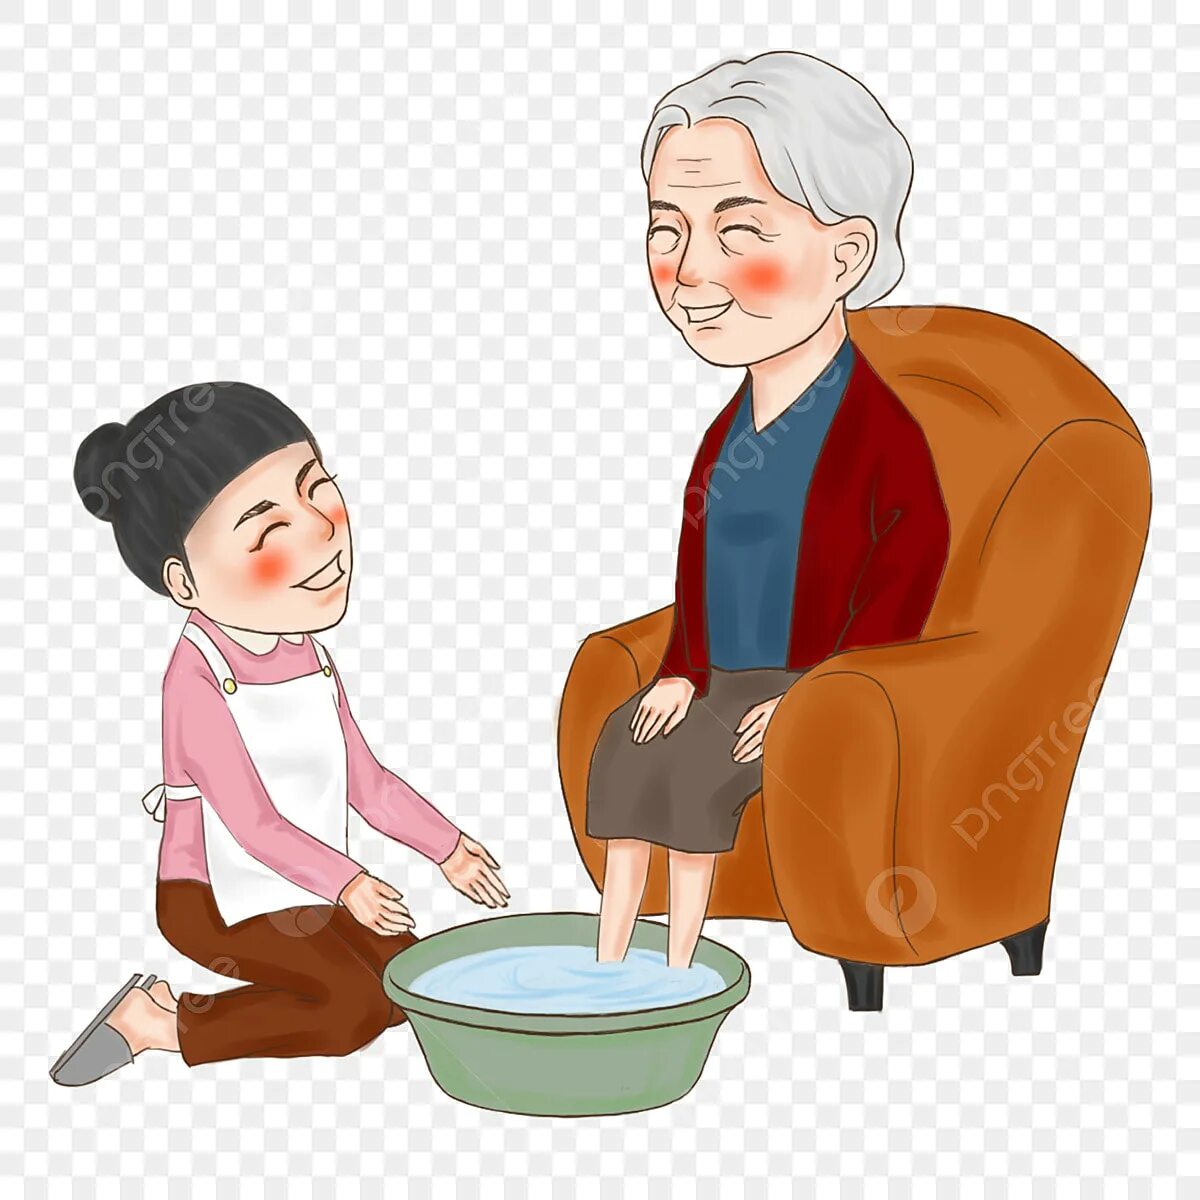 Мама моет бабушку. Уважение к пожилым. Дети помогают пожилым. Уважение старших иллюстрация. Помощь пожилым людям иллюстрации.